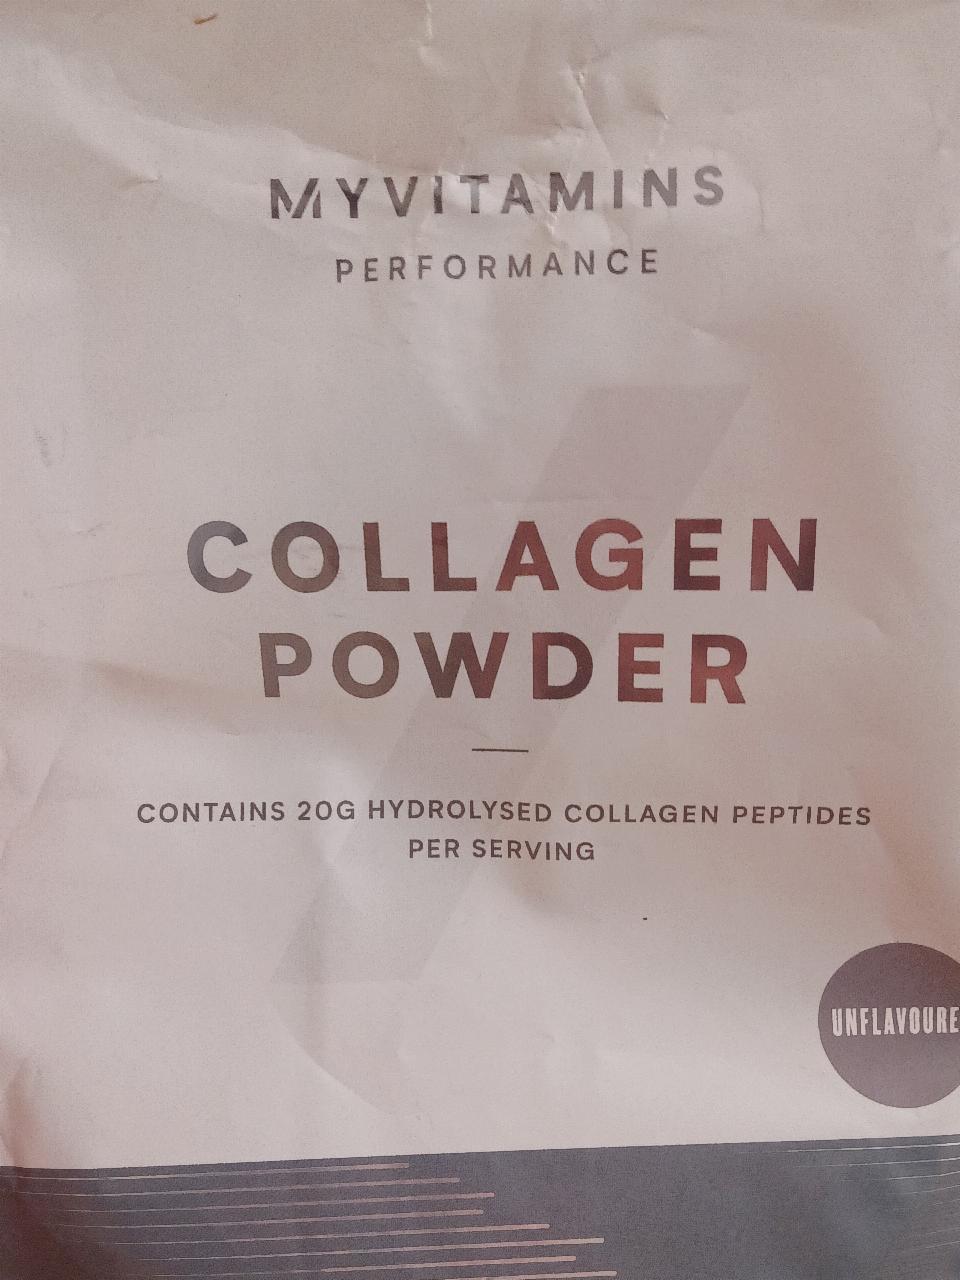 Fotografie - Collagen powder unflavoured MyVitamins Performance